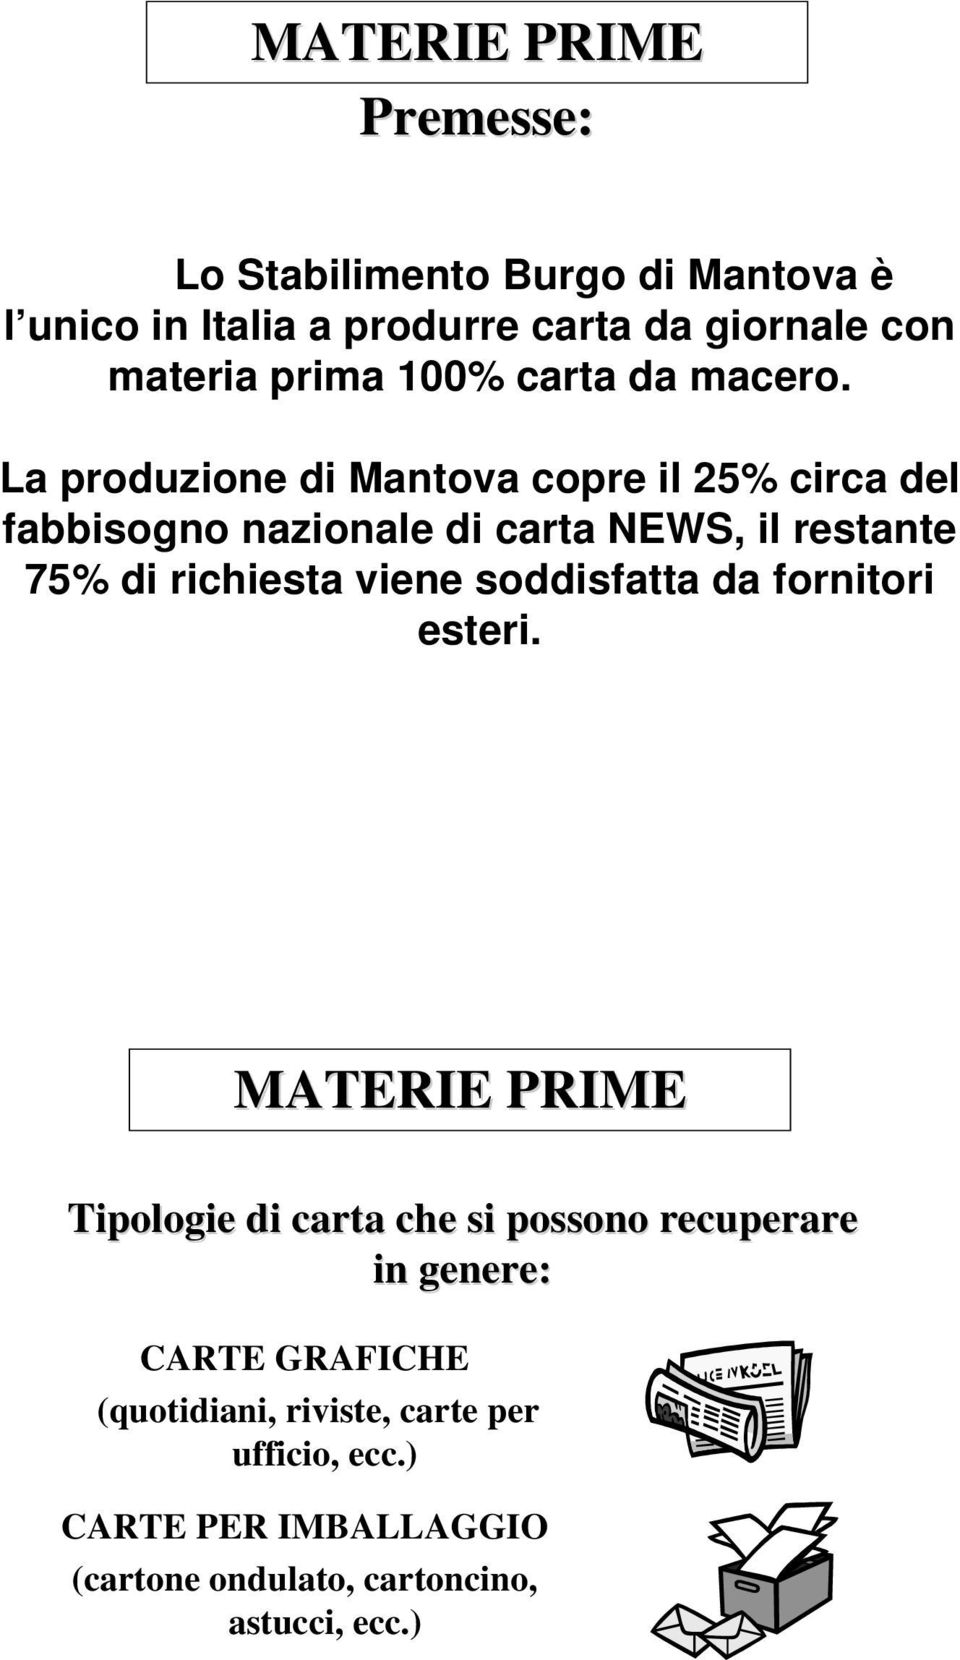 La produzione di Mantova copre il 25% circa del fabbisogno nazionale di carta NEWS, il restante 75% di richiesta viene